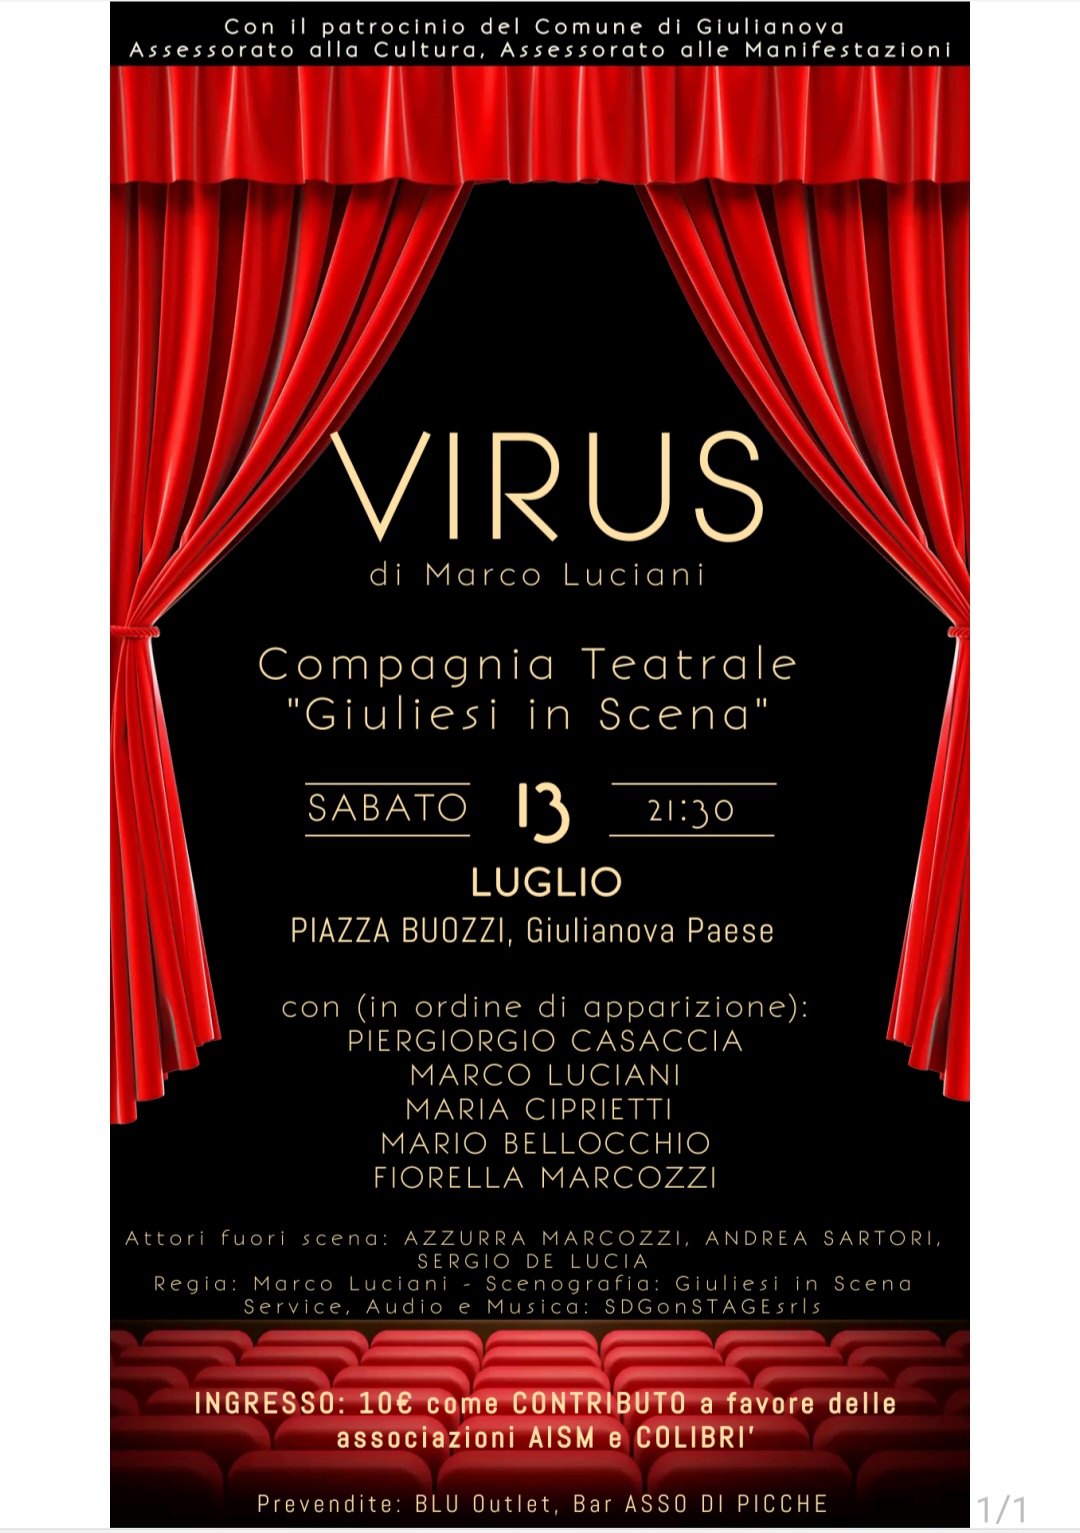 Spettacolo. I giuliesi tornano “in scena” con la commedia teatrale “Virus”, scritta dal regista Marco Luciani